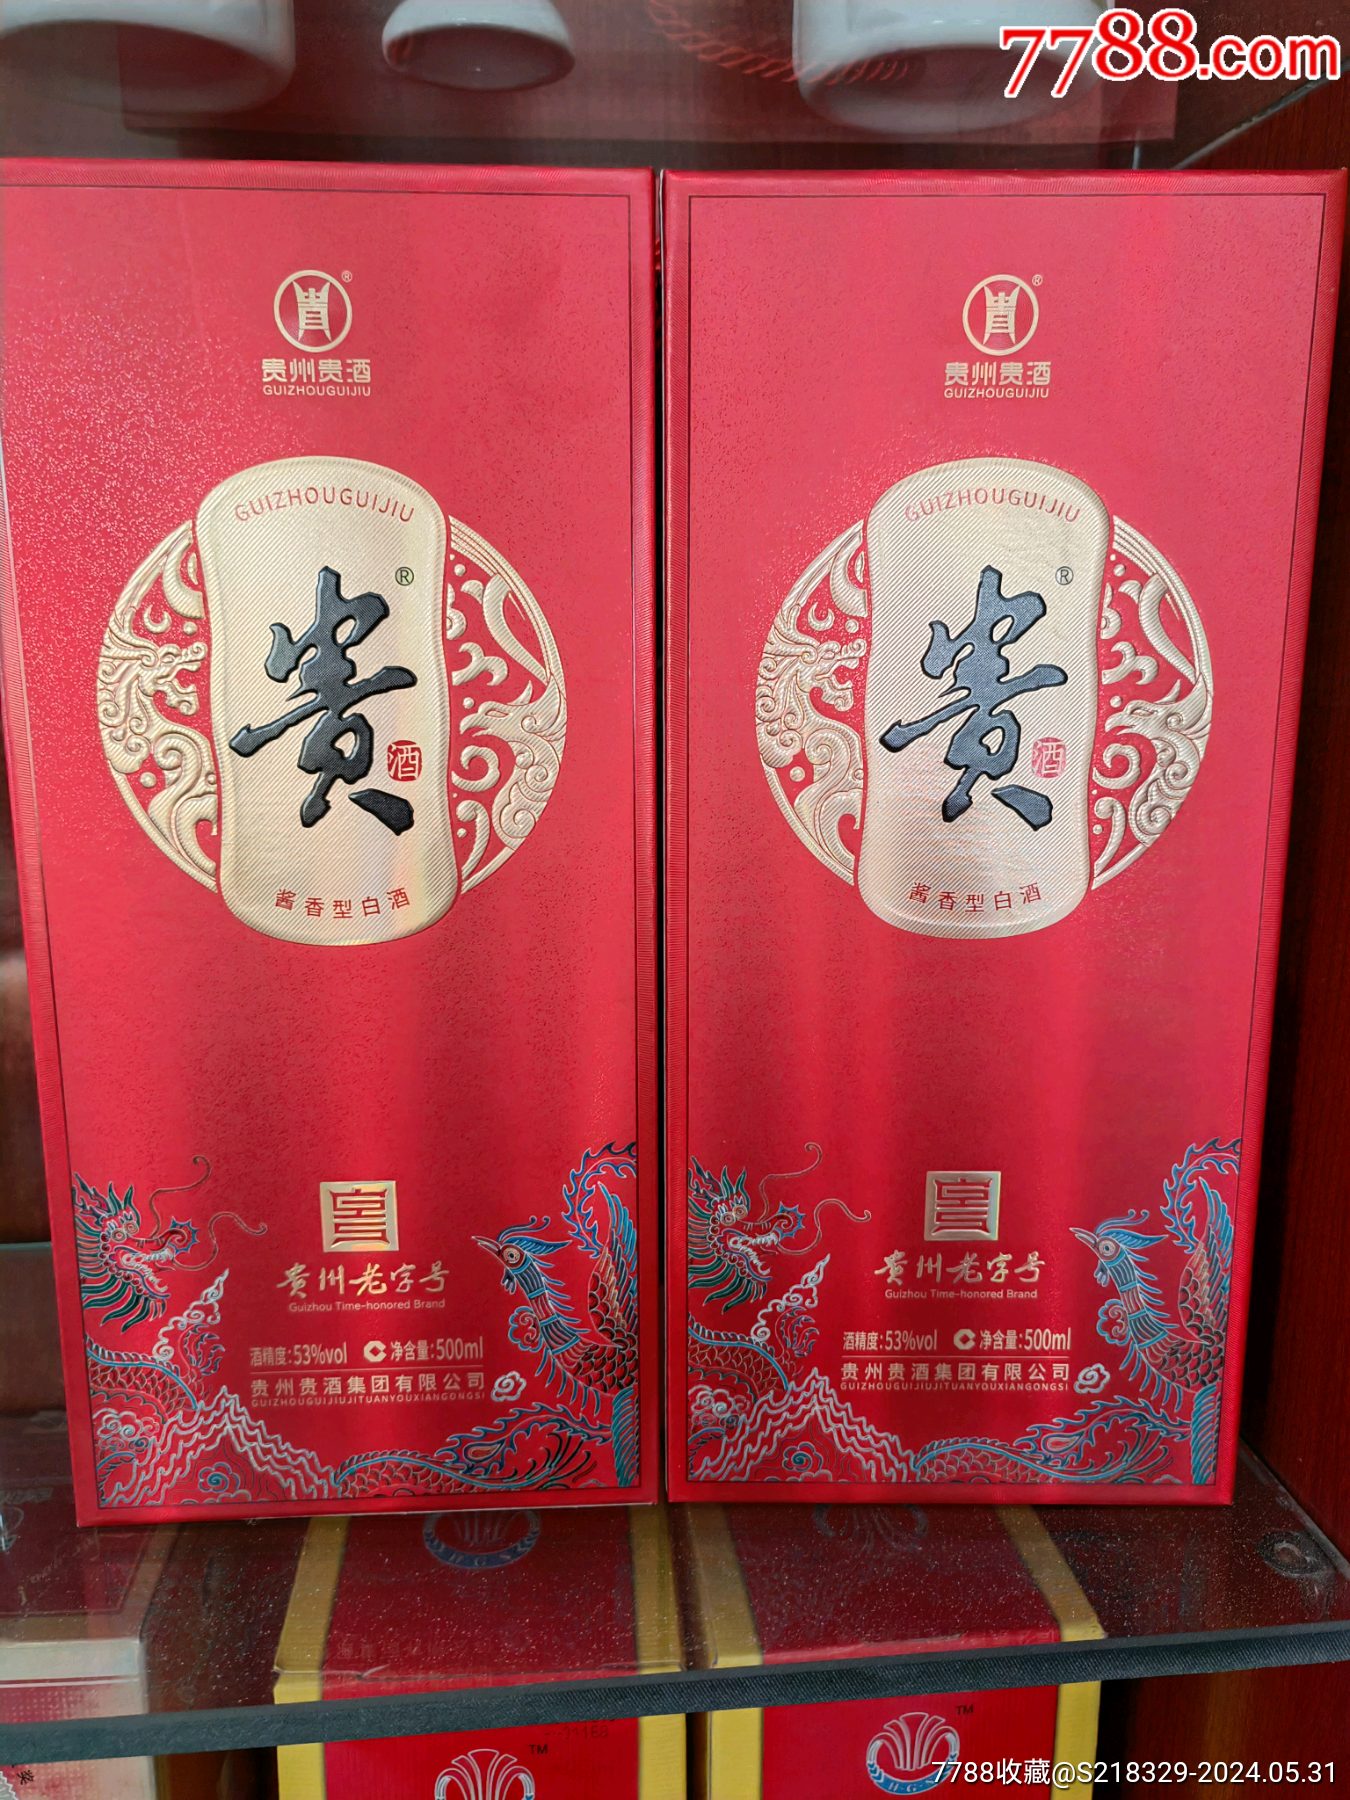 5品99泸州老窖头曲￥39975品99古井贡酒￥1,2997